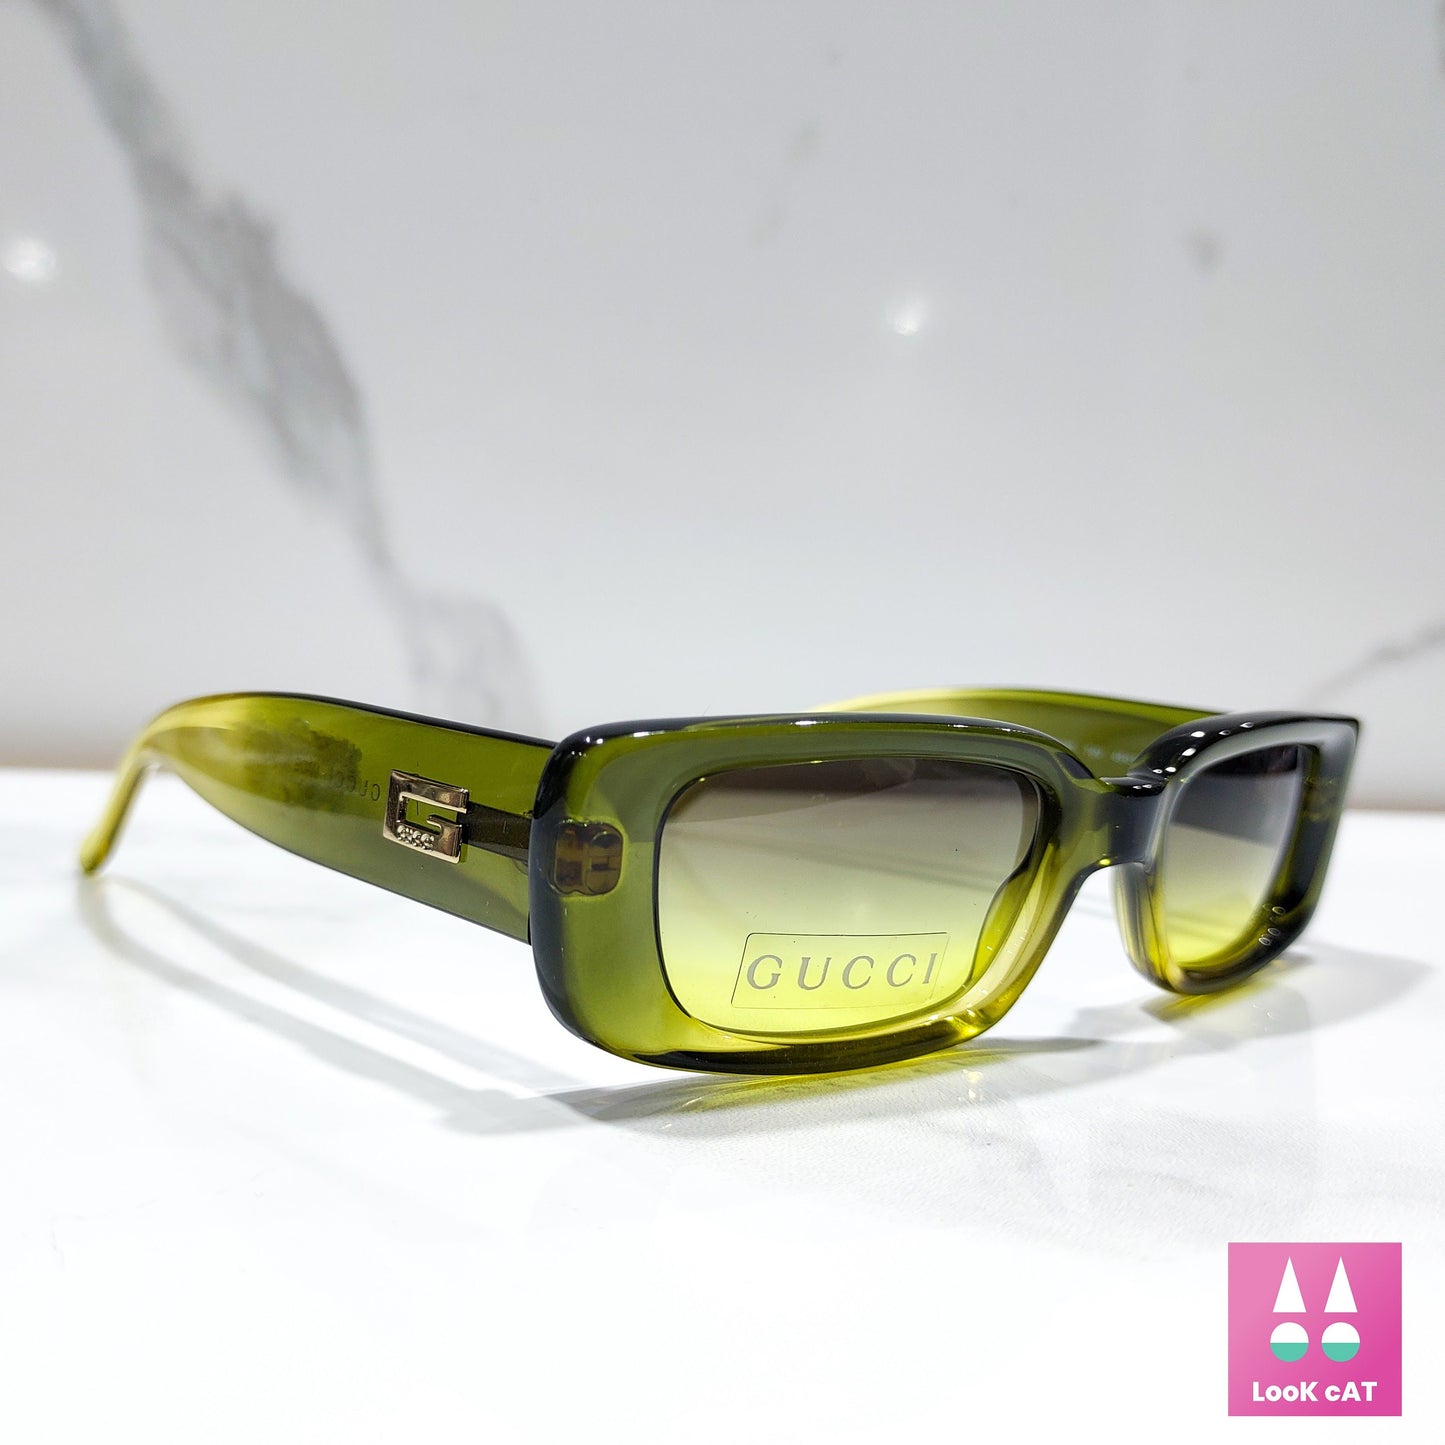 Gucci GG 2409 rari occhiali da sole vintage NOS occhiali lunetta brille y2k